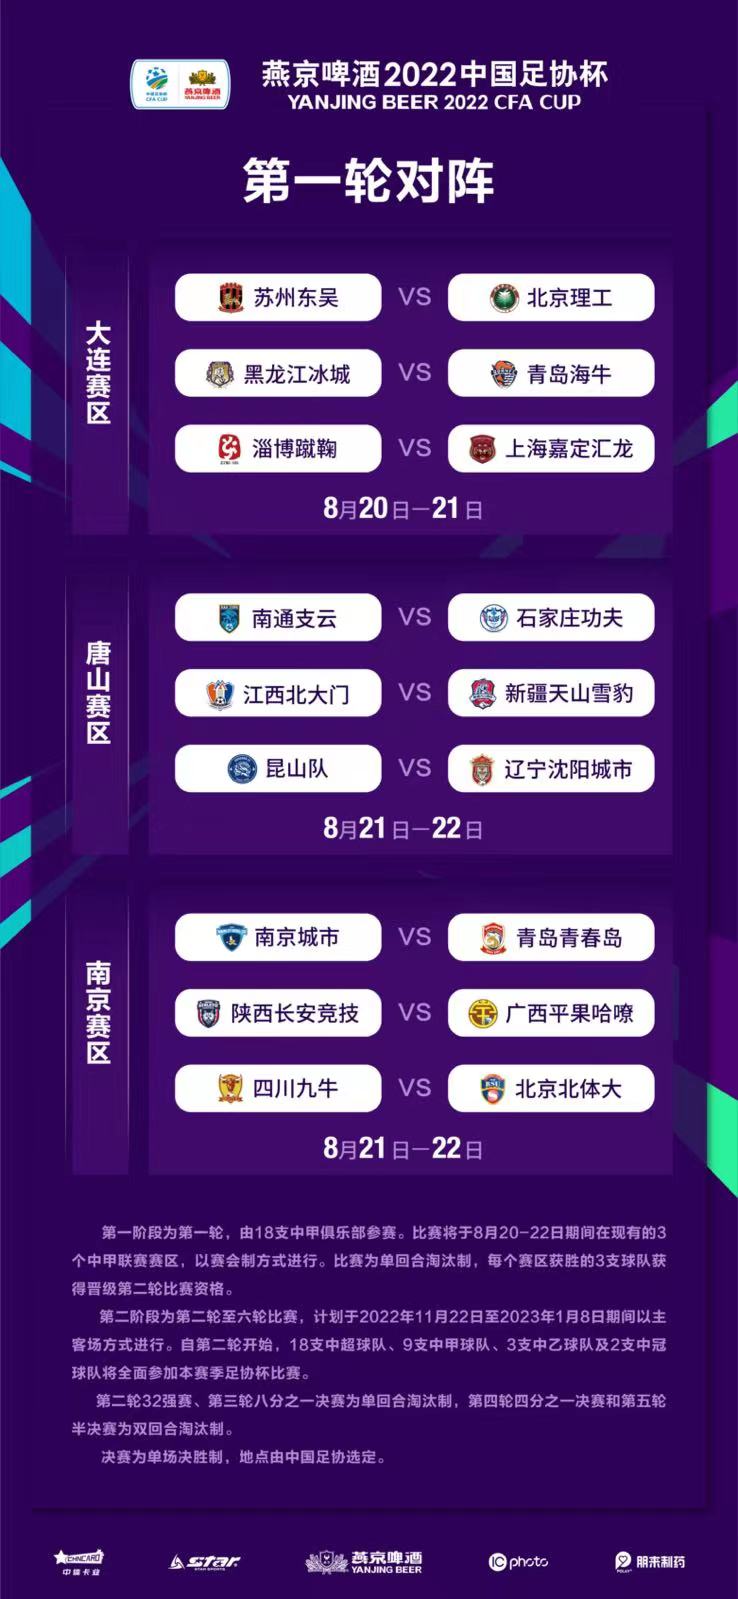 燕京啤酒2022中国足协杯第一轮比赛抽签结果出炉